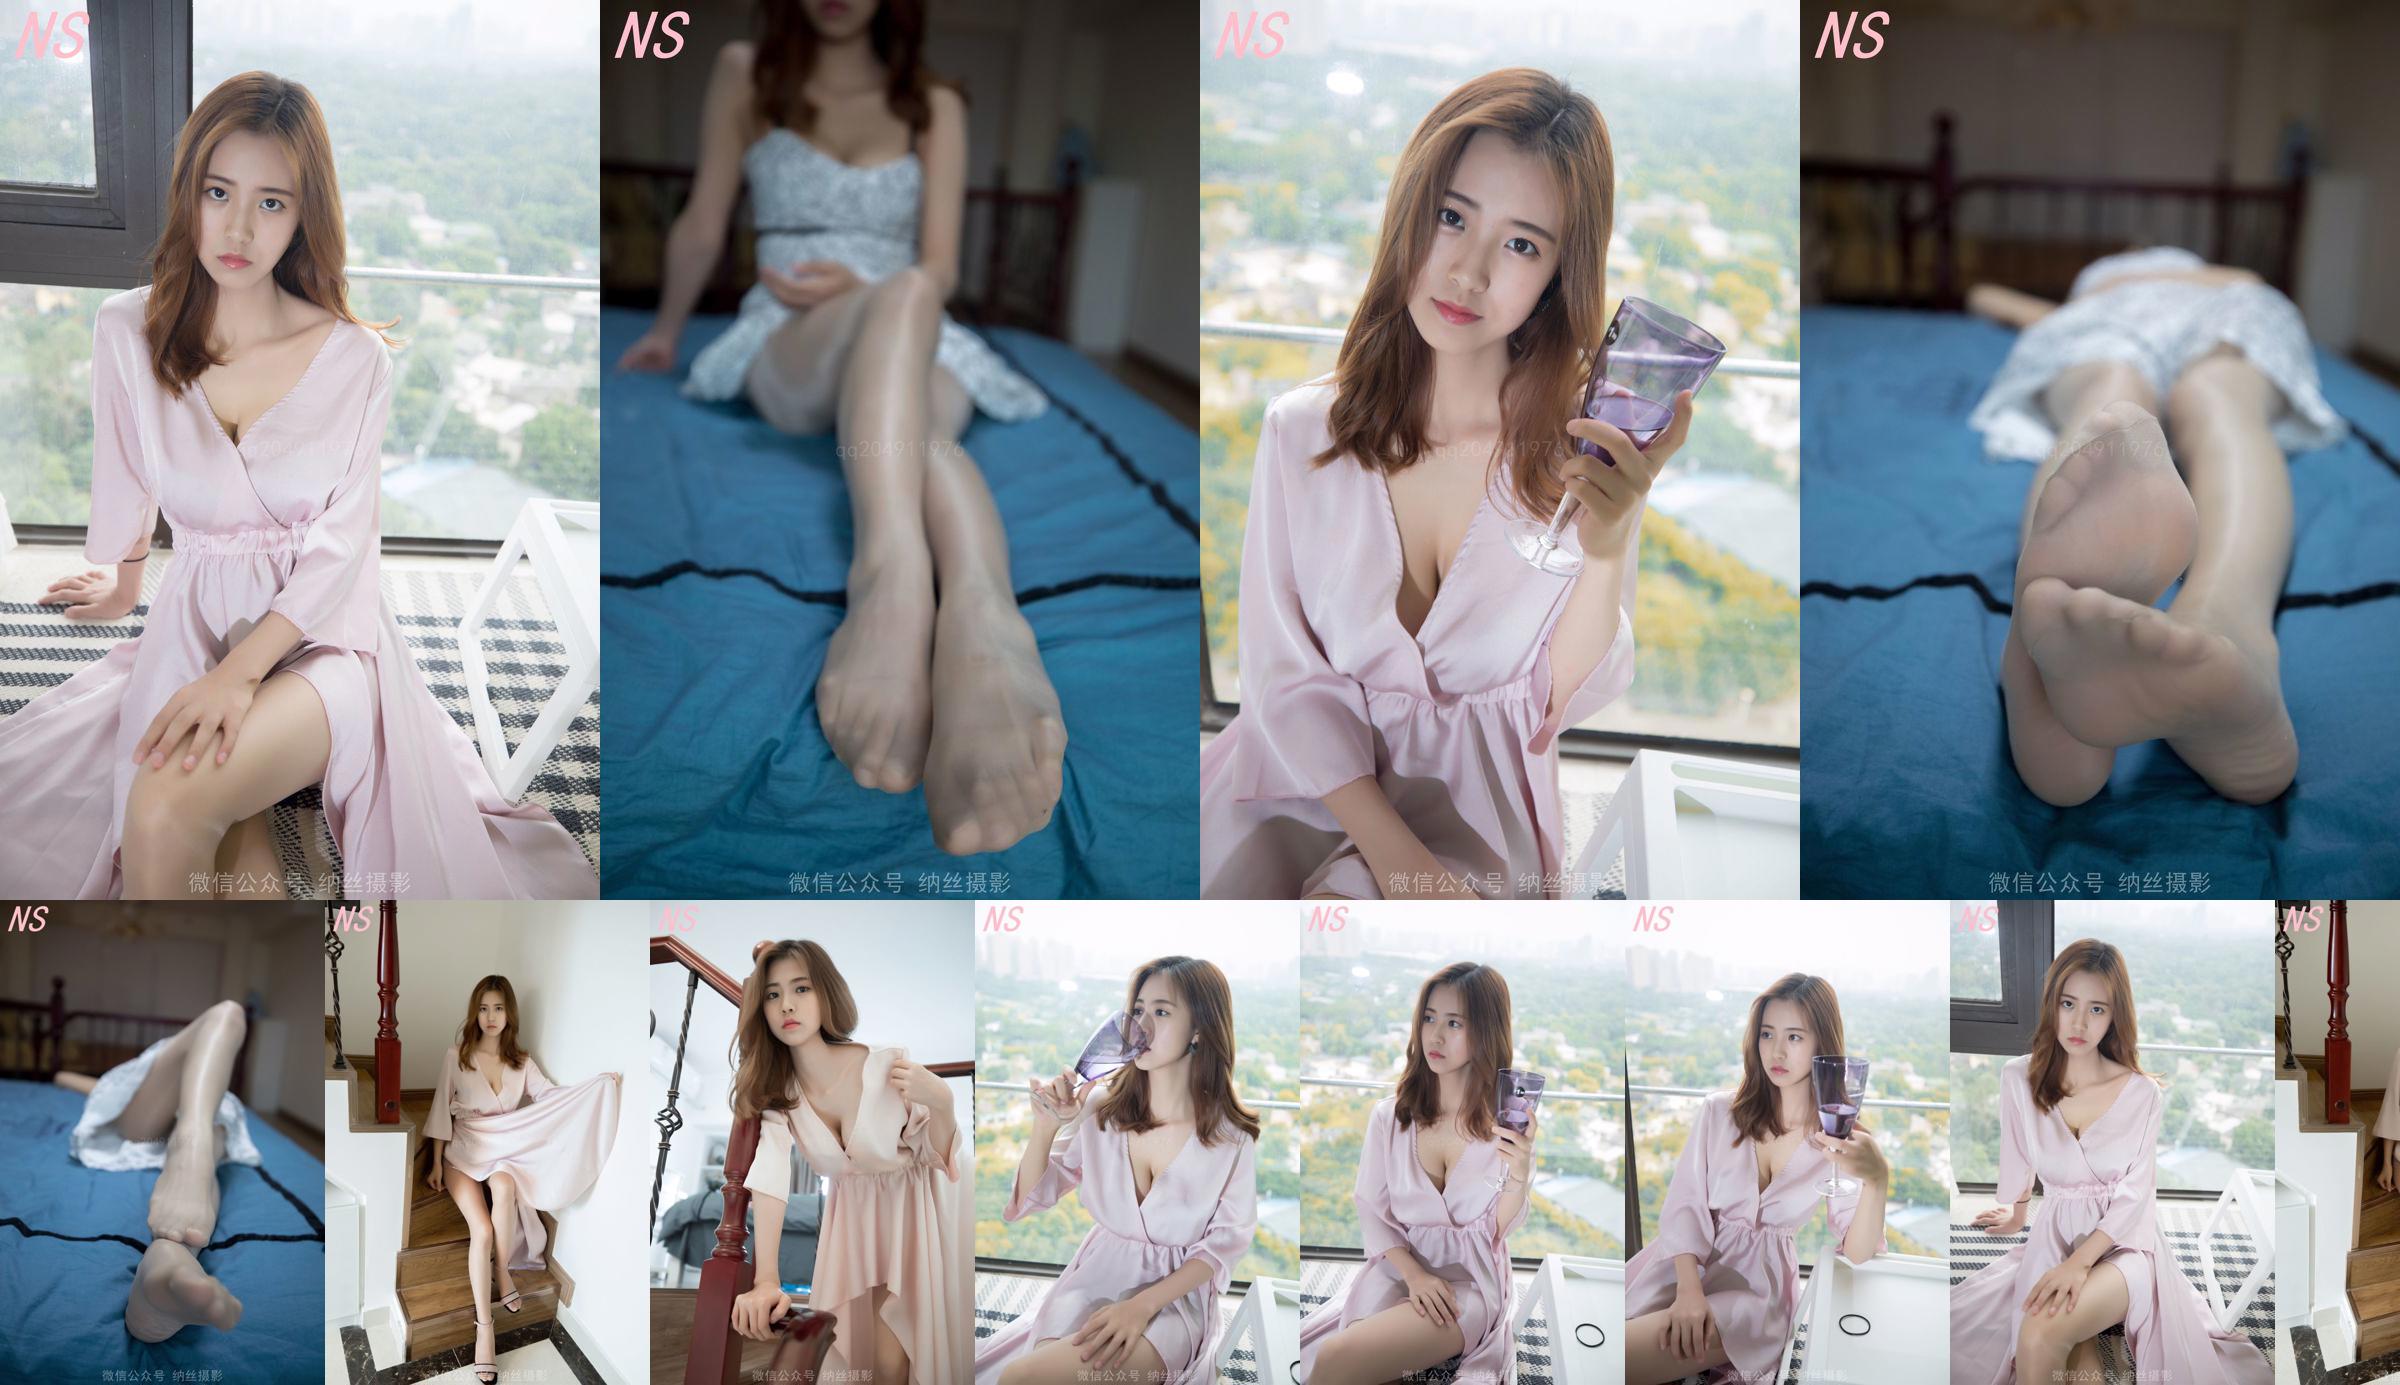 Beauty anchor Hanshuang "The Temptation of Pajamas" [Nasi Photography] No.aa980f Page 4